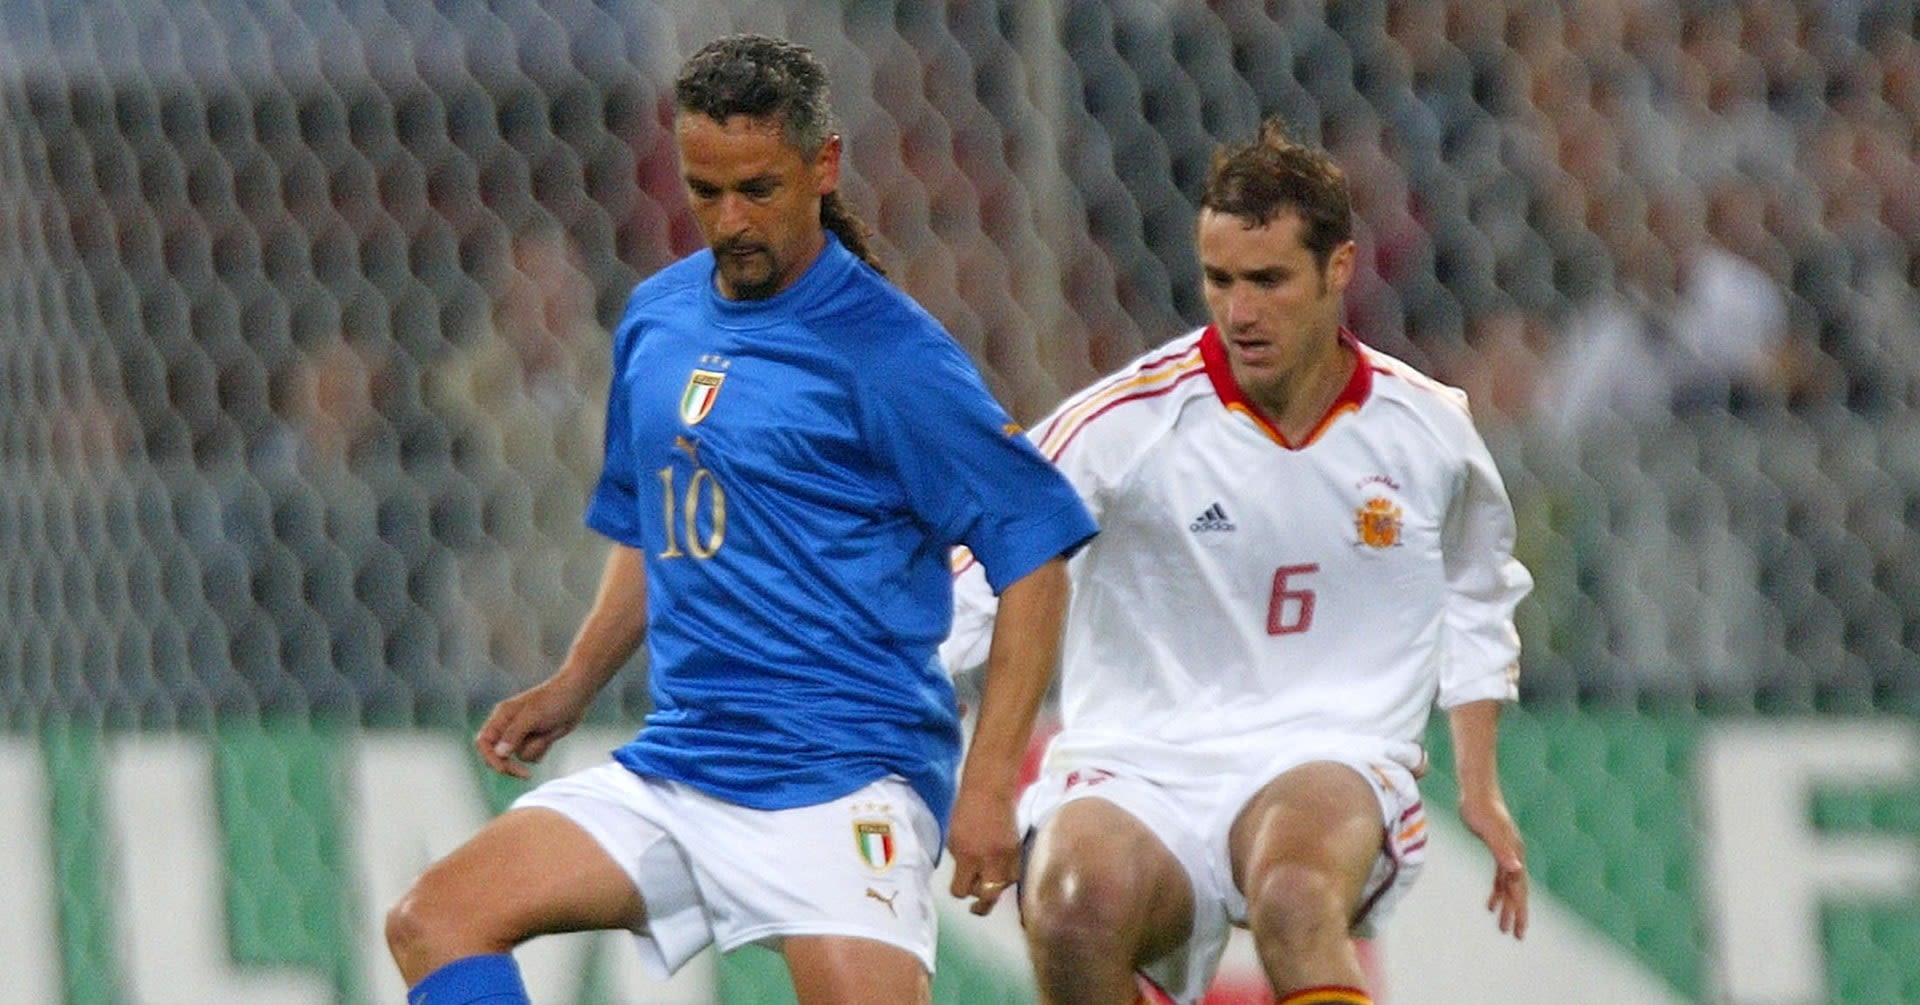 Former Italy international Roberto Baggio robbed at gunpoint at home